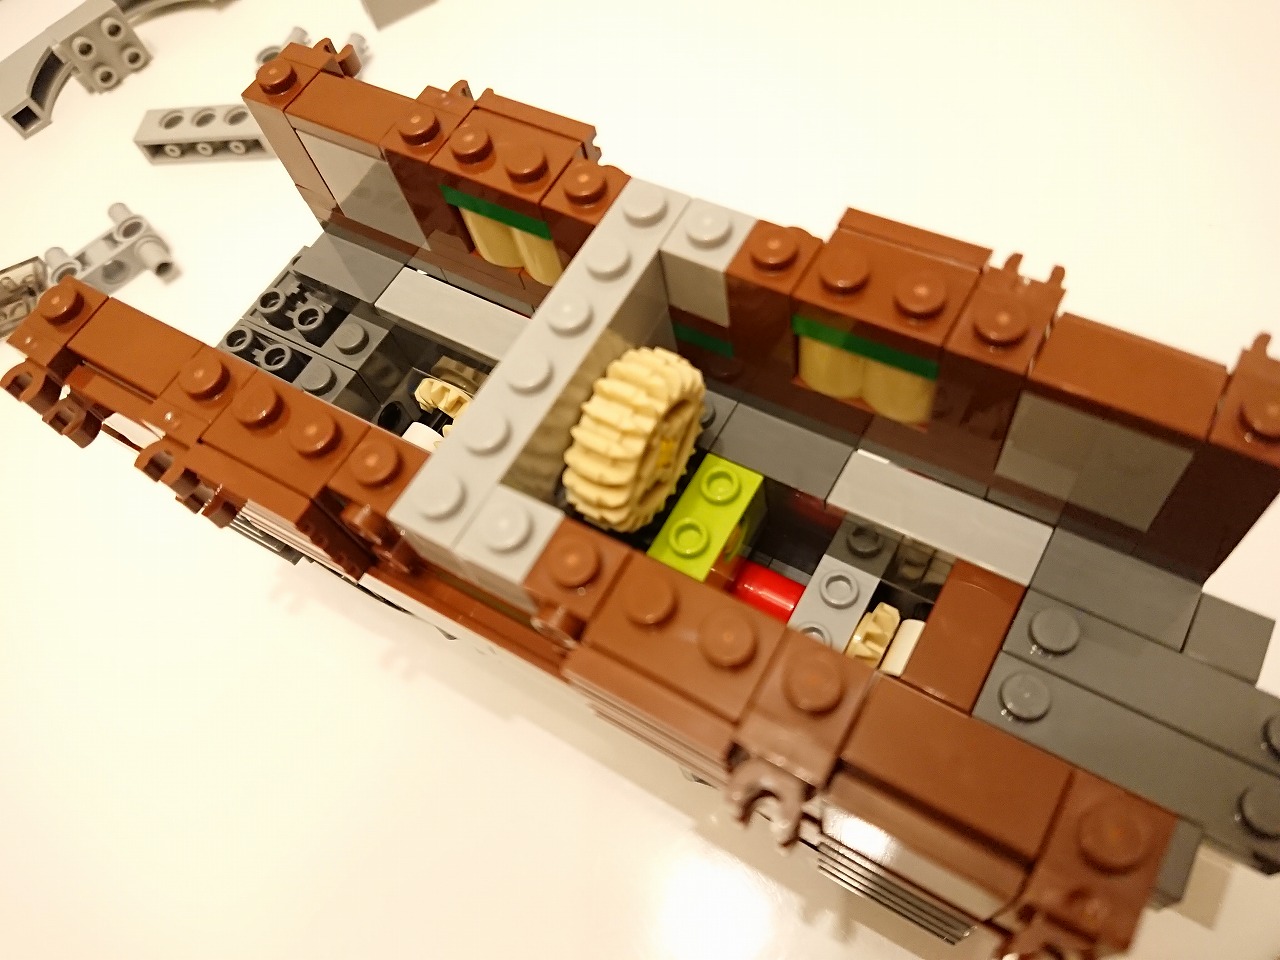 レゴ (LEGO) クリエイターエキスパート クロコダイル電気機関車 10277 を作ってみた(その2)～機関車の作成～ | 人生がたりない